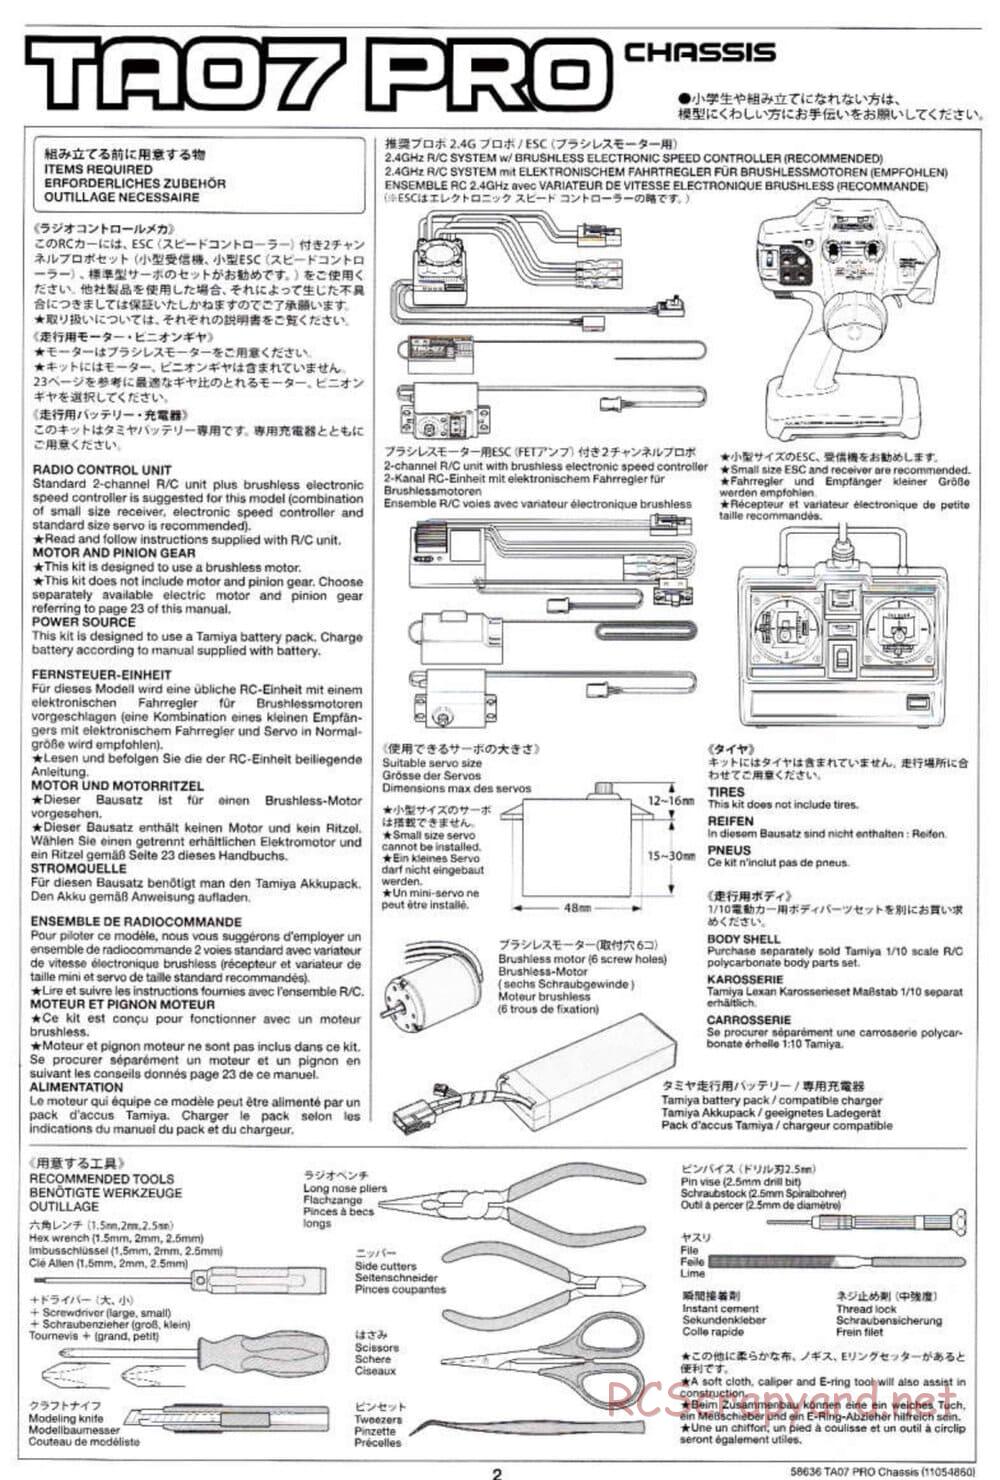 Tamiya - TA07 Pro Chassis - Manual - Page 2